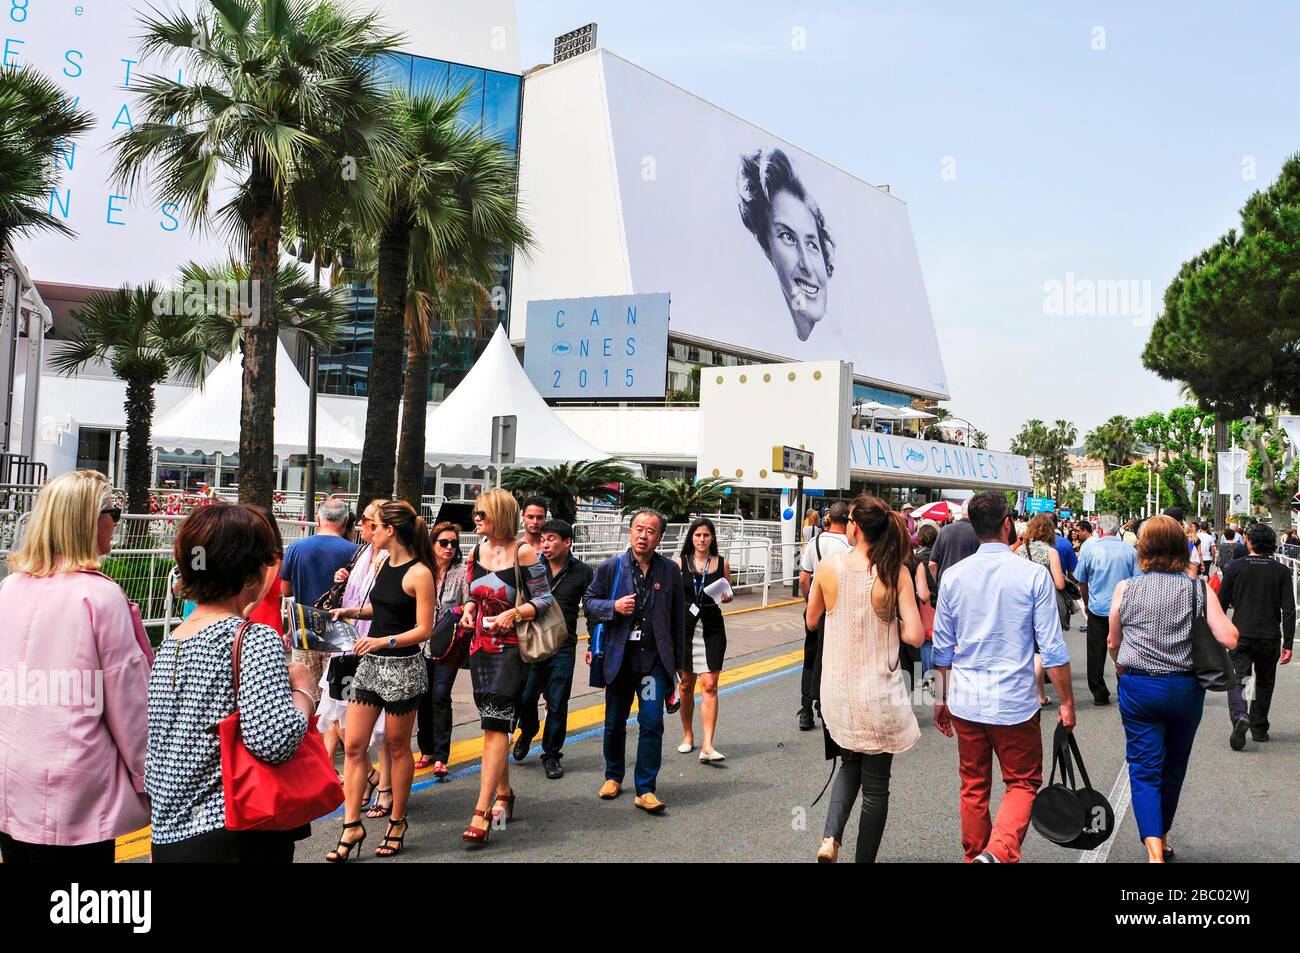 CANNES, FRANKREICH - 14. MAI: Menschen rund um das Palais des Festivals, in der Promenade de la Croisette, während der 68. Ausgabe der Cannes Film Festival o Stockfoto